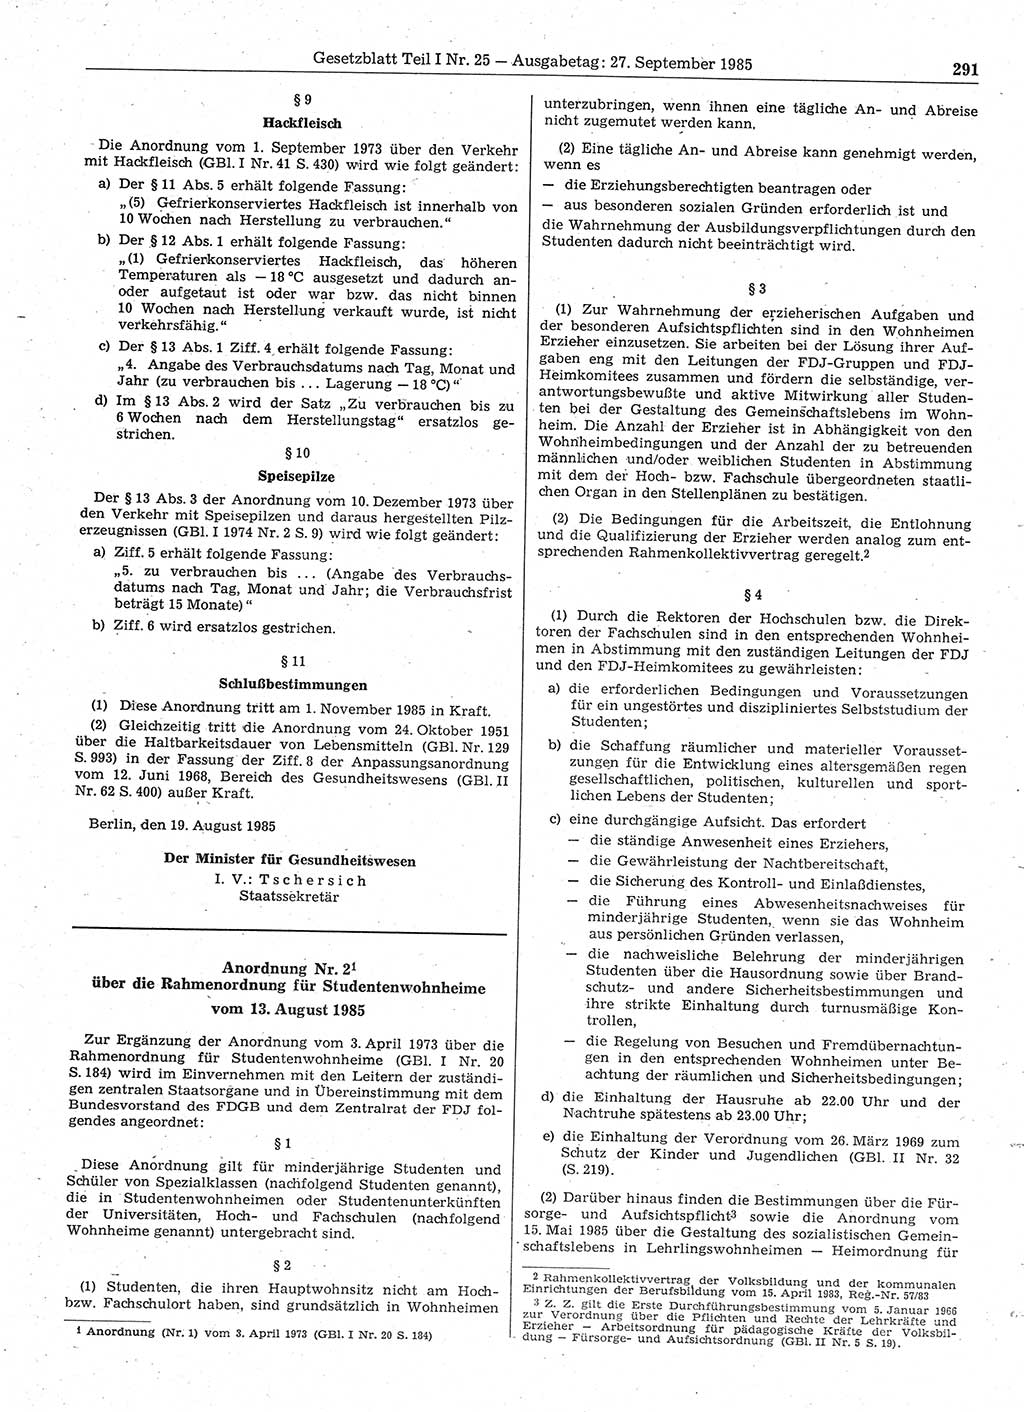 Gesetzblatt (GBl.) der Deutschen Demokratischen Republik (DDR) Teil Ⅰ 1985, Seite 291 (GBl. DDR Ⅰ 1985, S. 291)